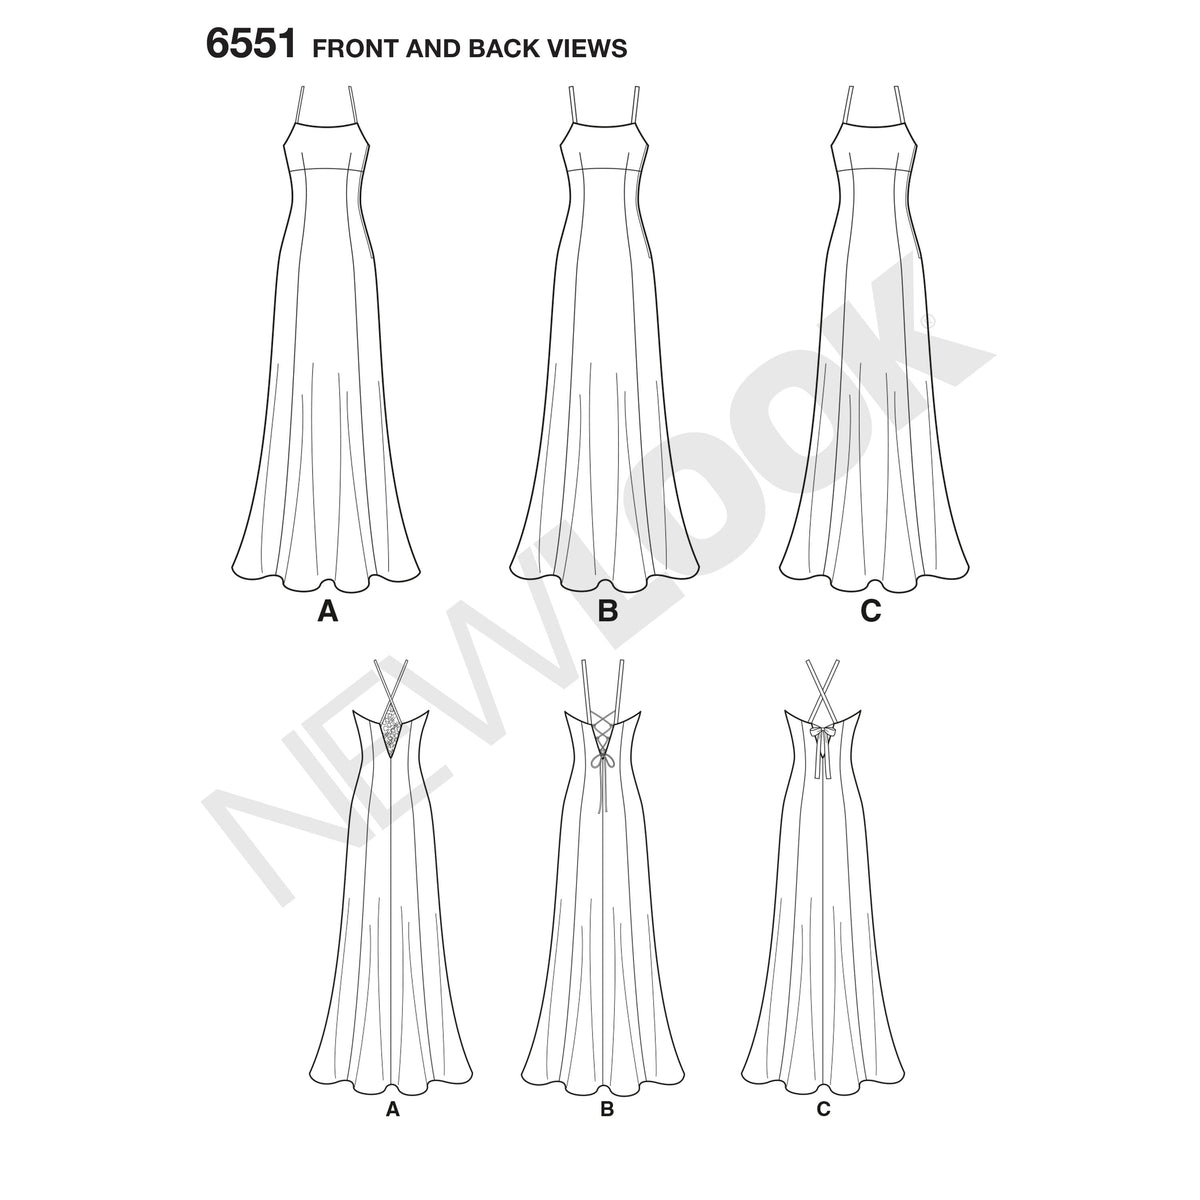 6551 New Look Pattern 6551 Women's Gown